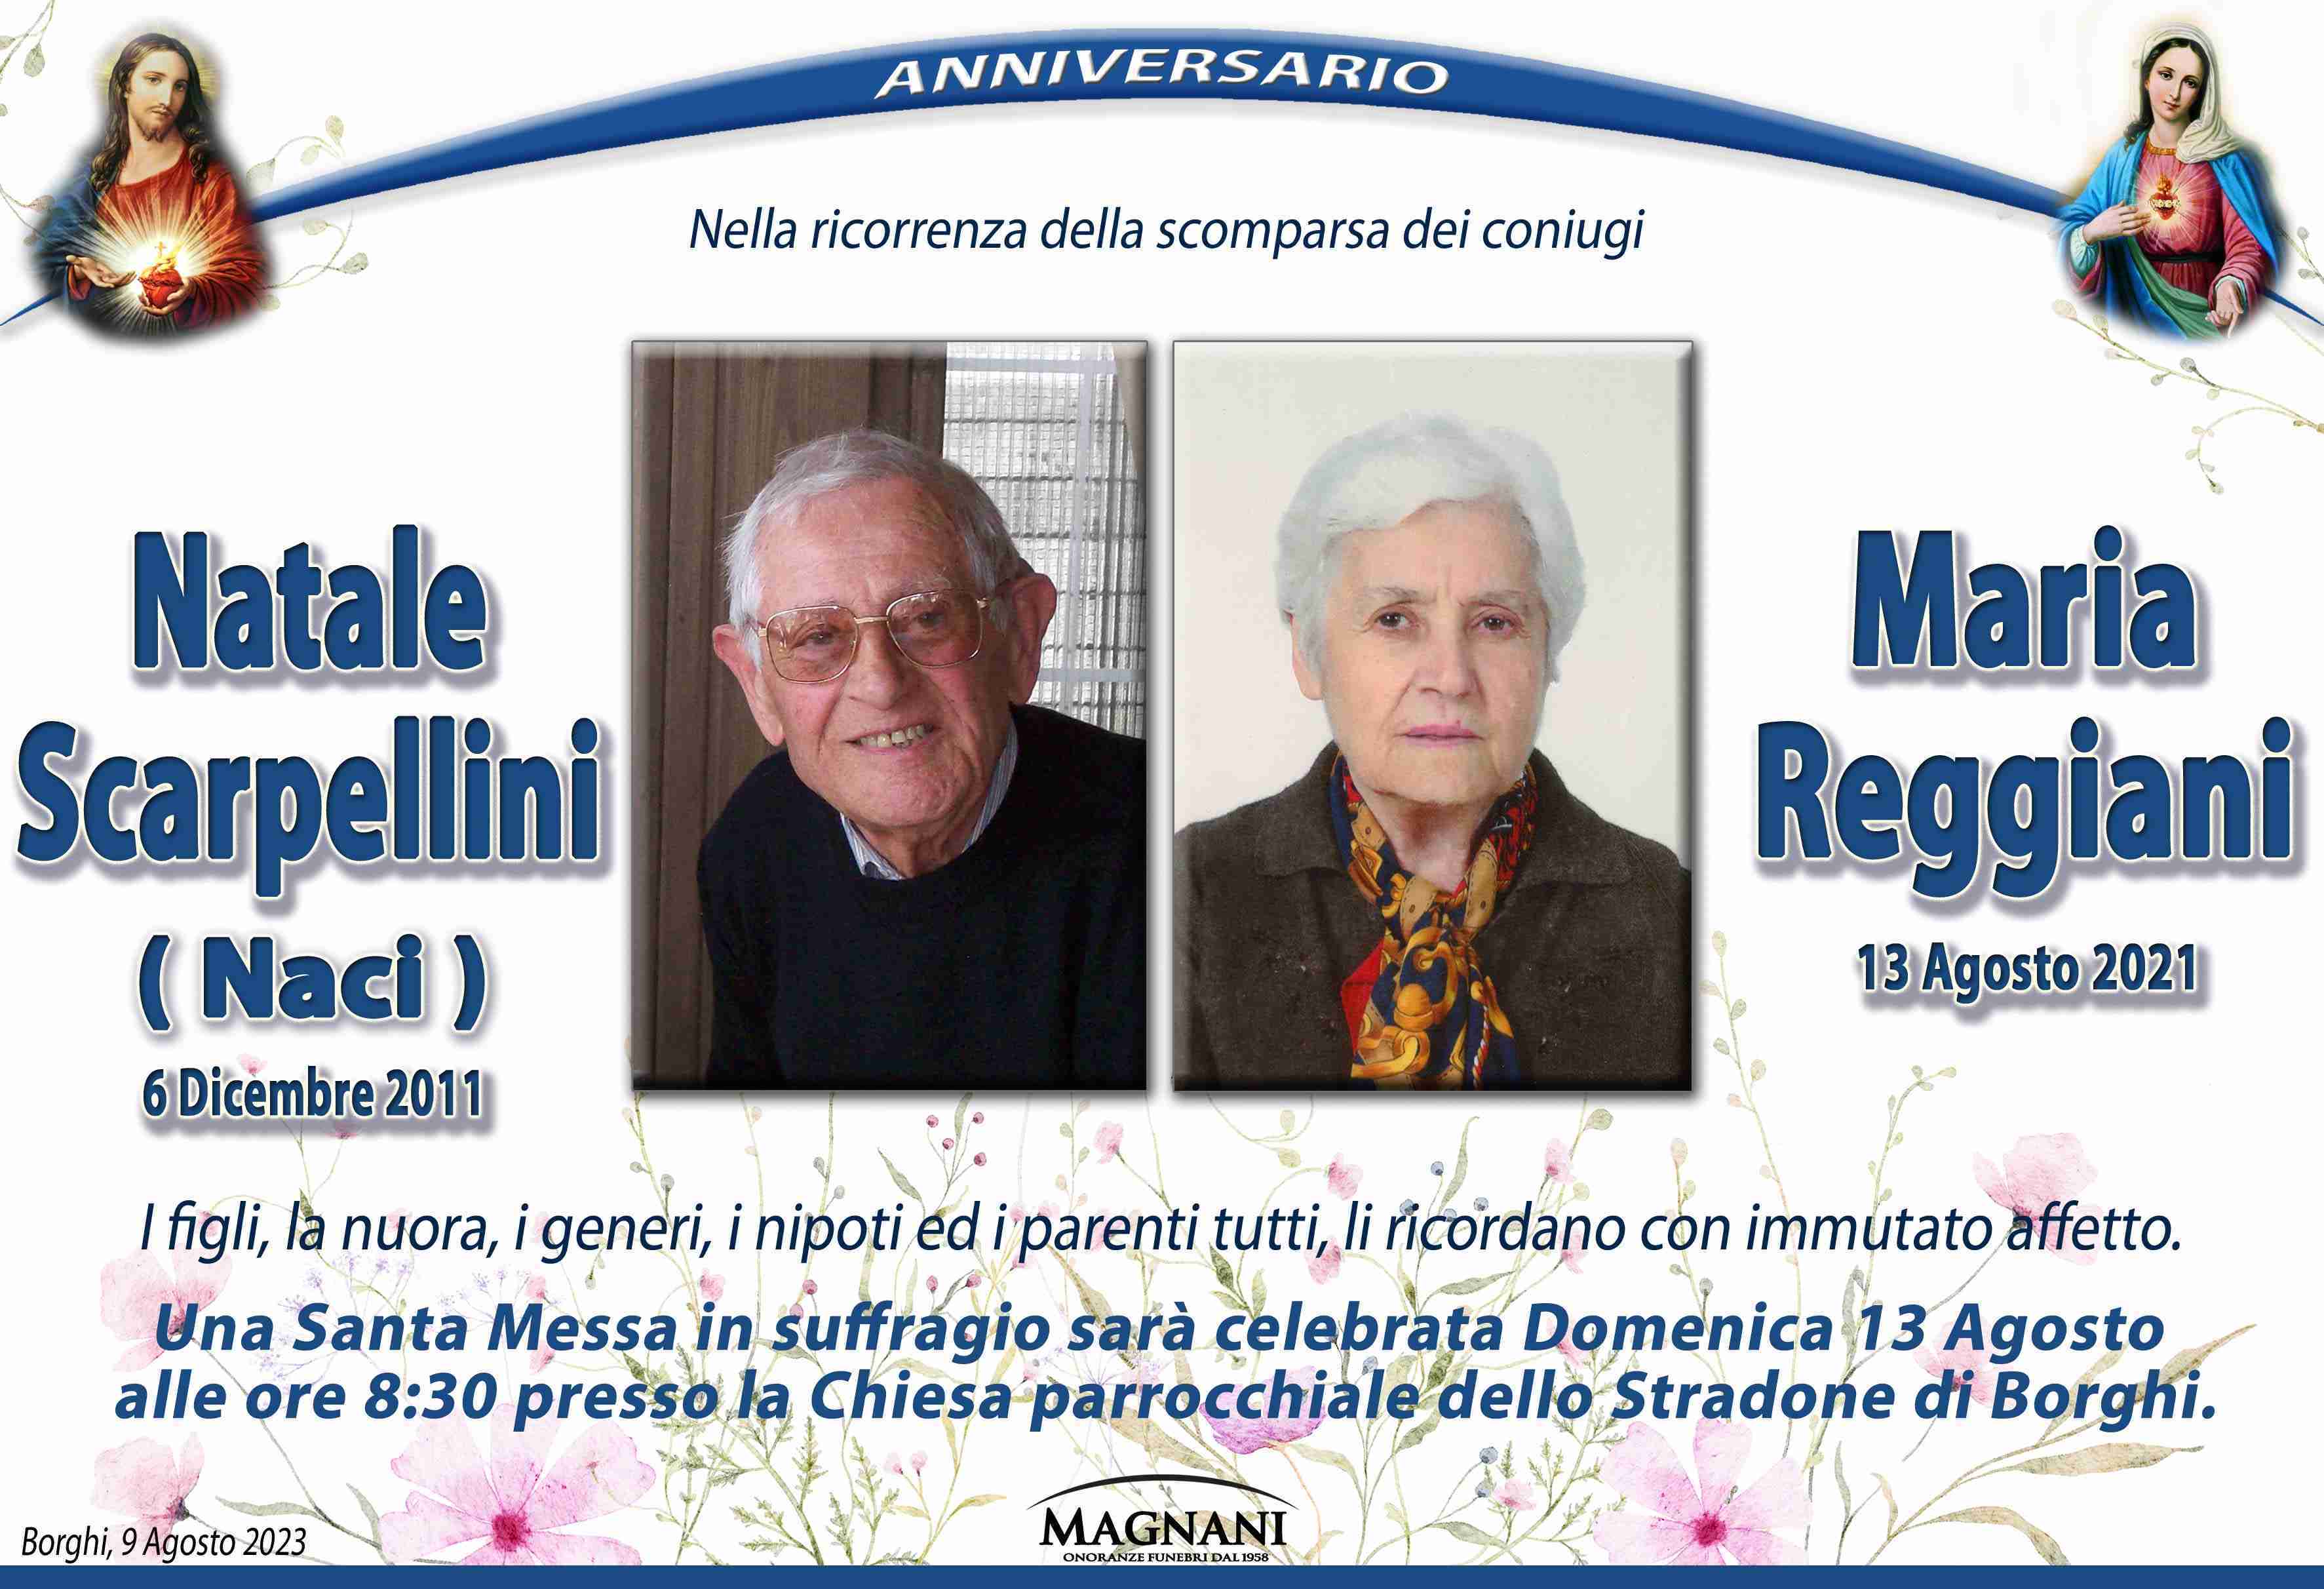 Natale Scarpellini e Maria Reggiani